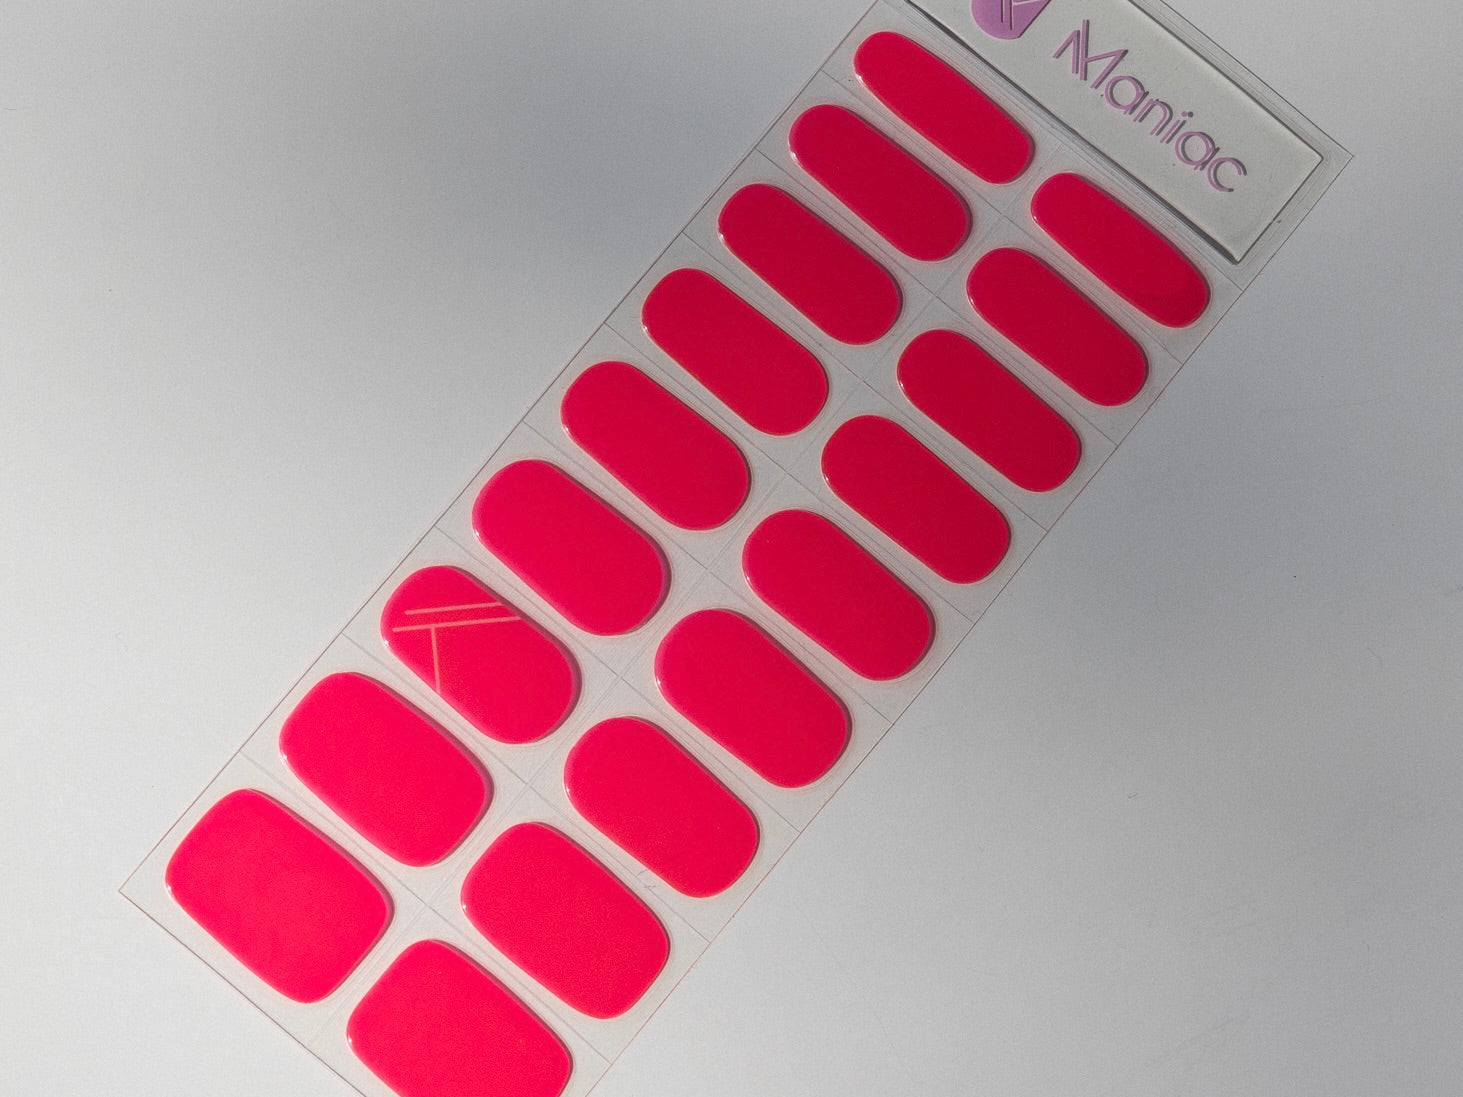 Phenyo Pink Maniac Nails Gellak Sticker Manicure sheet